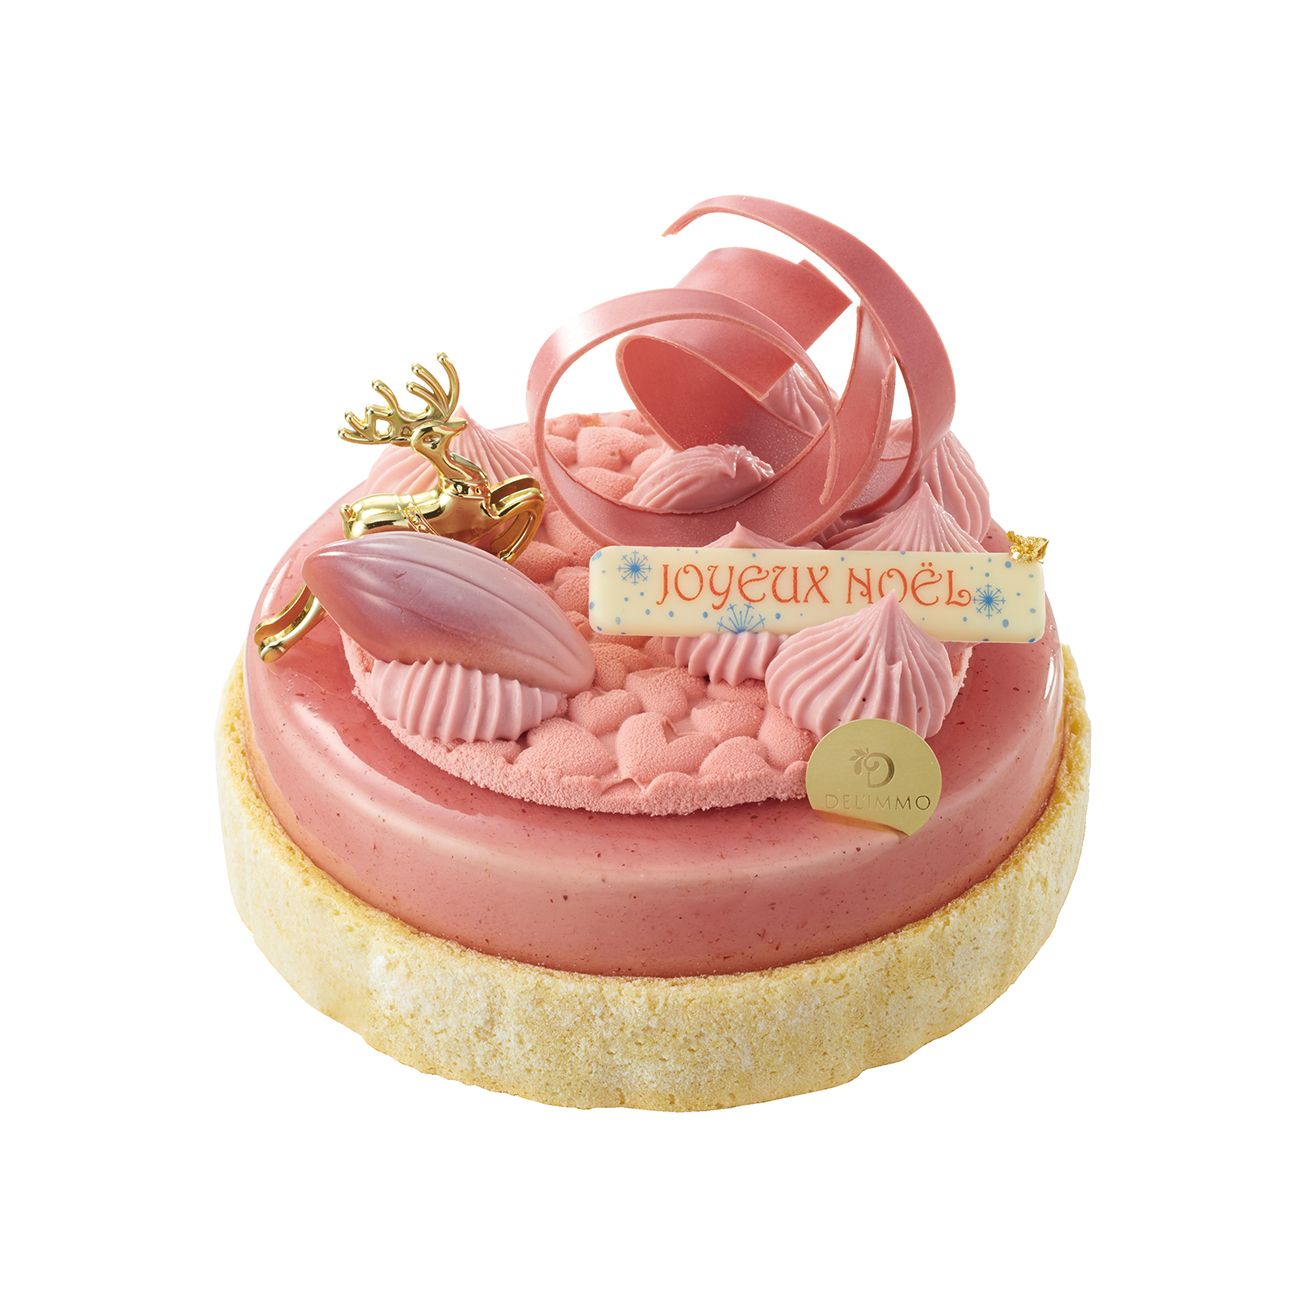 新宿小田急の「クリスマスケーキ」！真っ赤なバラのリースケーキや可愛いリボンケーキが登場！ #Z世代Pick